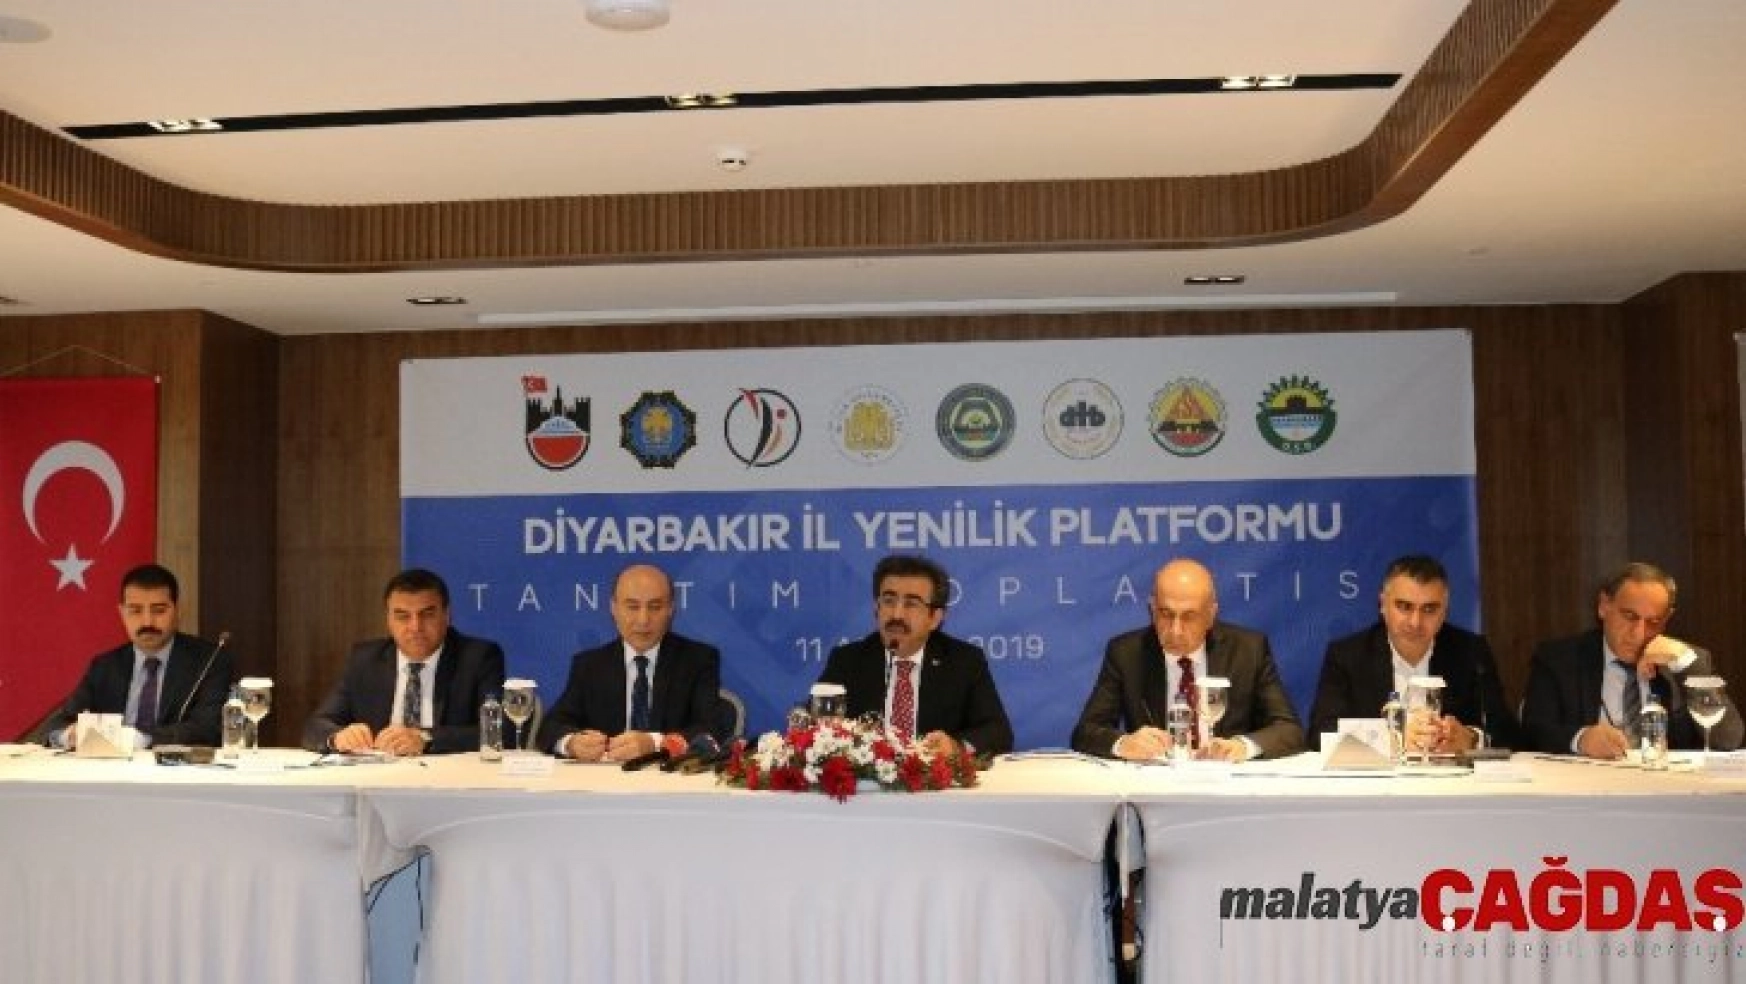 Diyarbakır'da İl Yenilik Platformu kuruldu